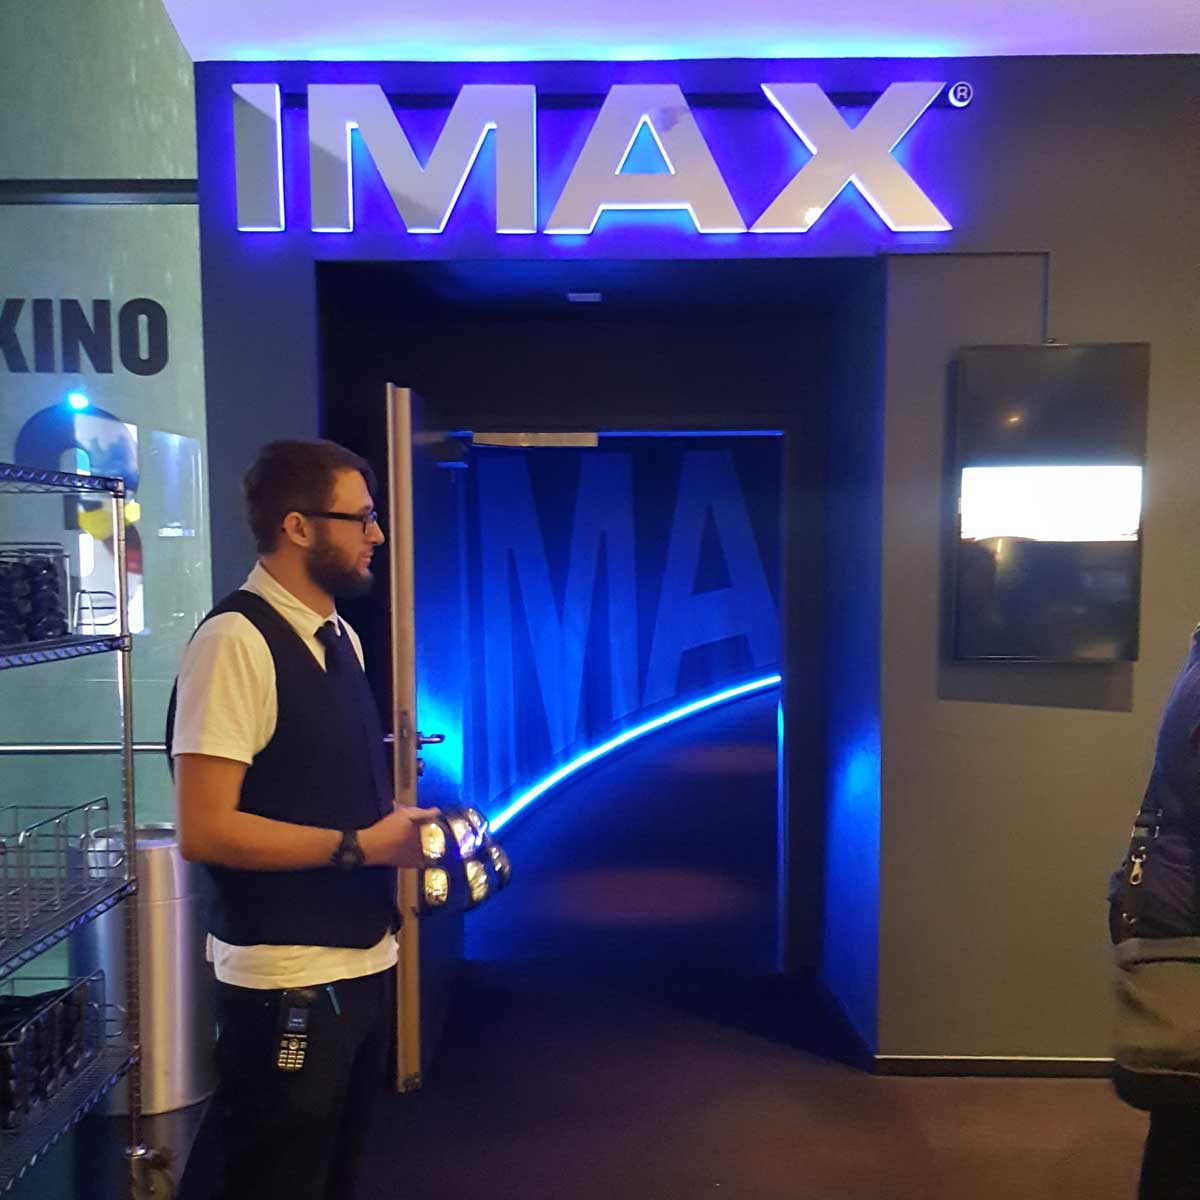 Imax Kino Karlsruhe